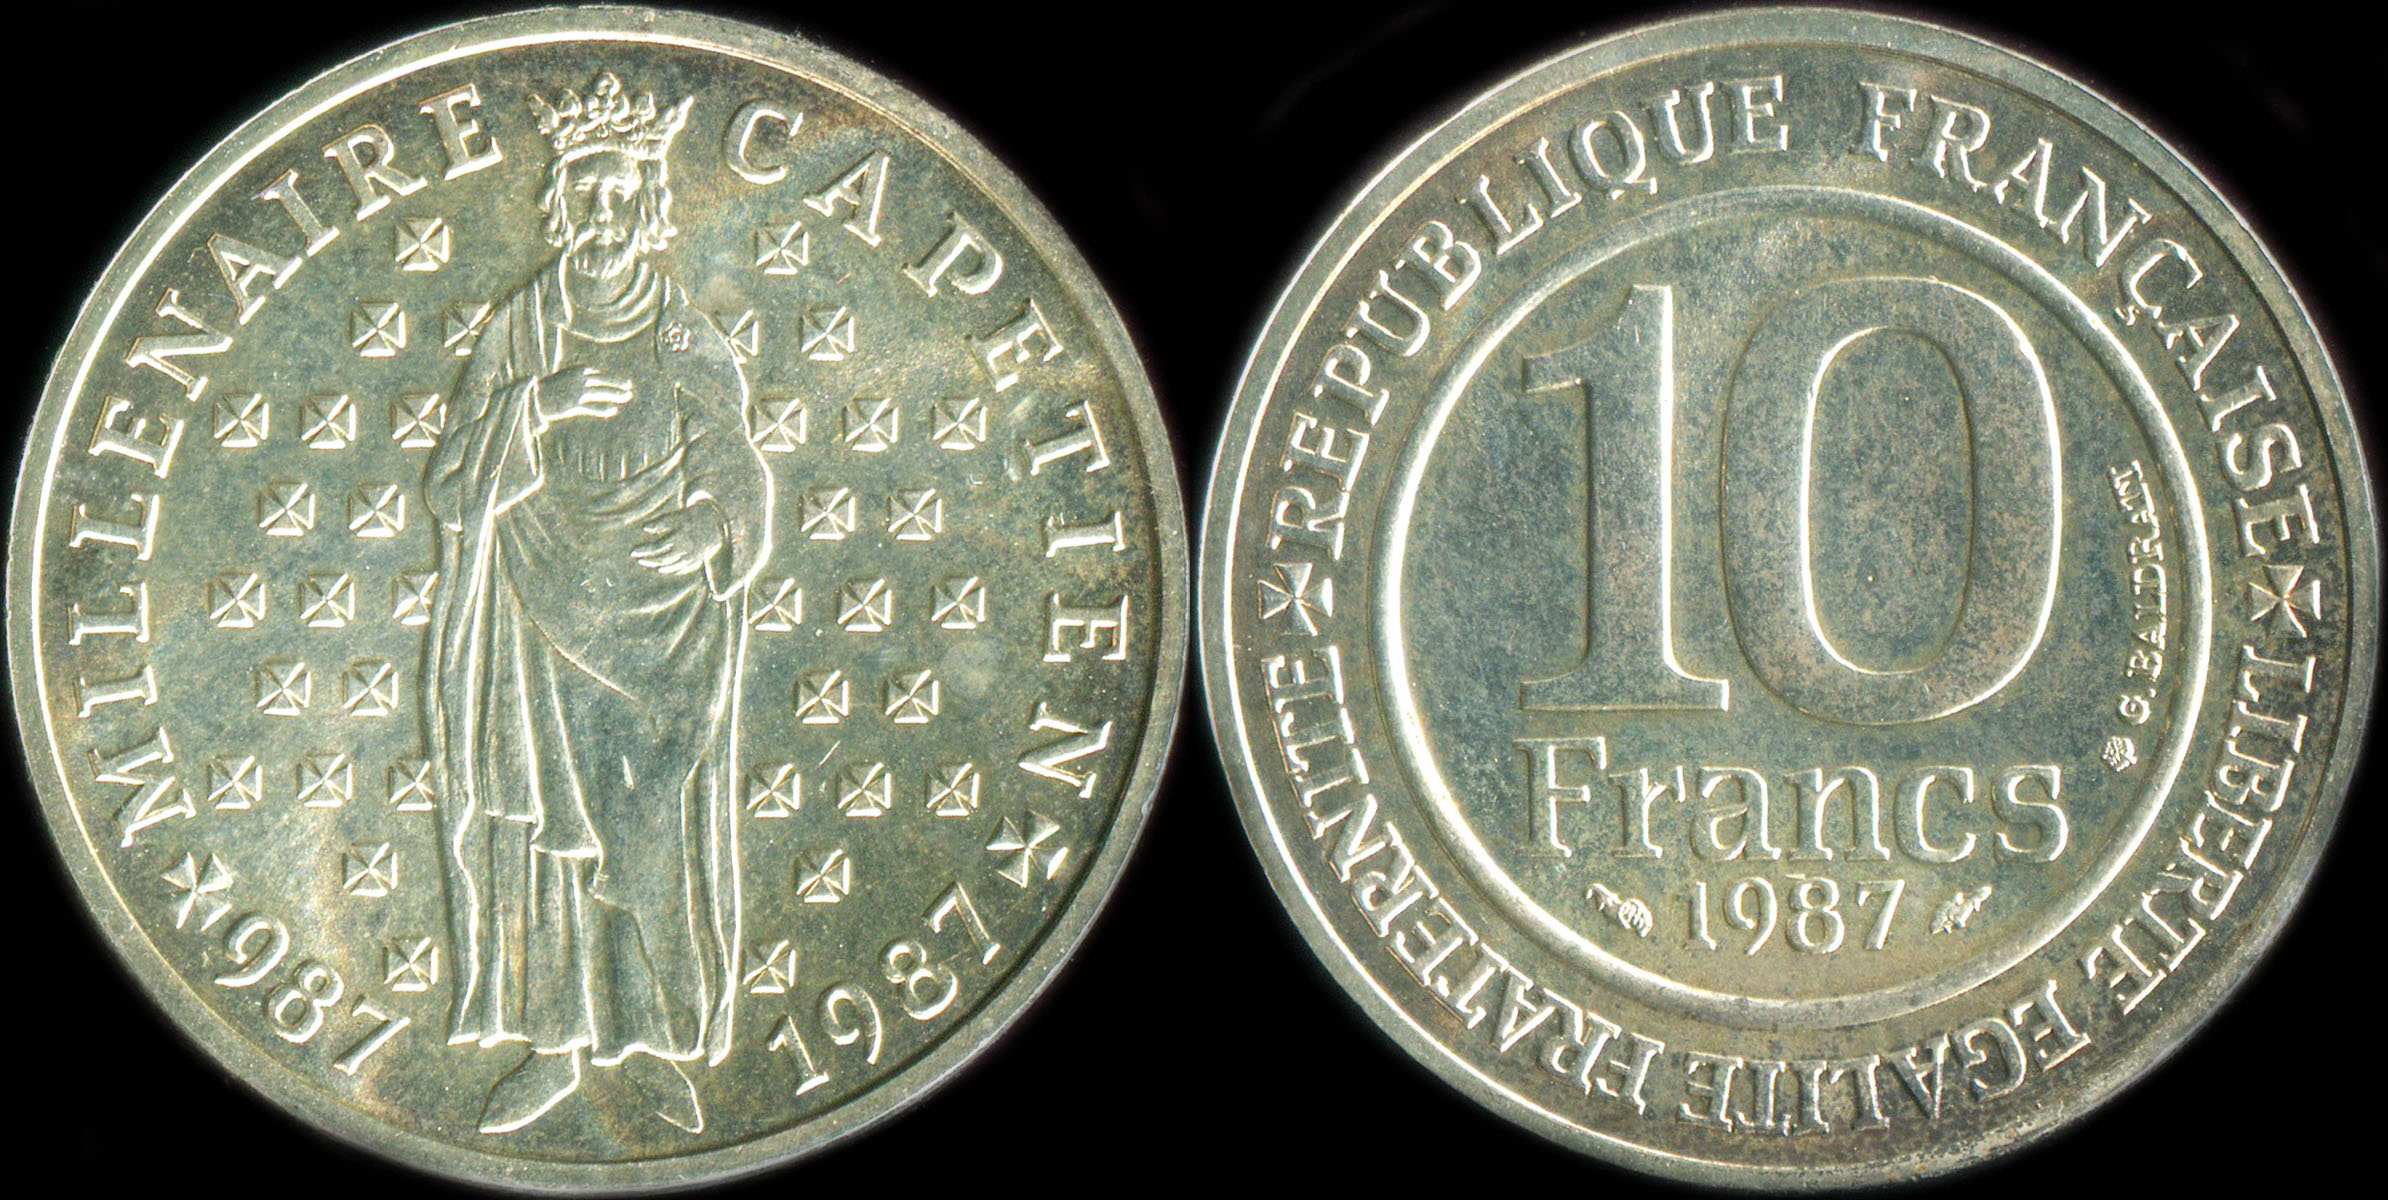 Pièce de 10 francs Millénaire Capétien 987-1987 - 1987 argent BU